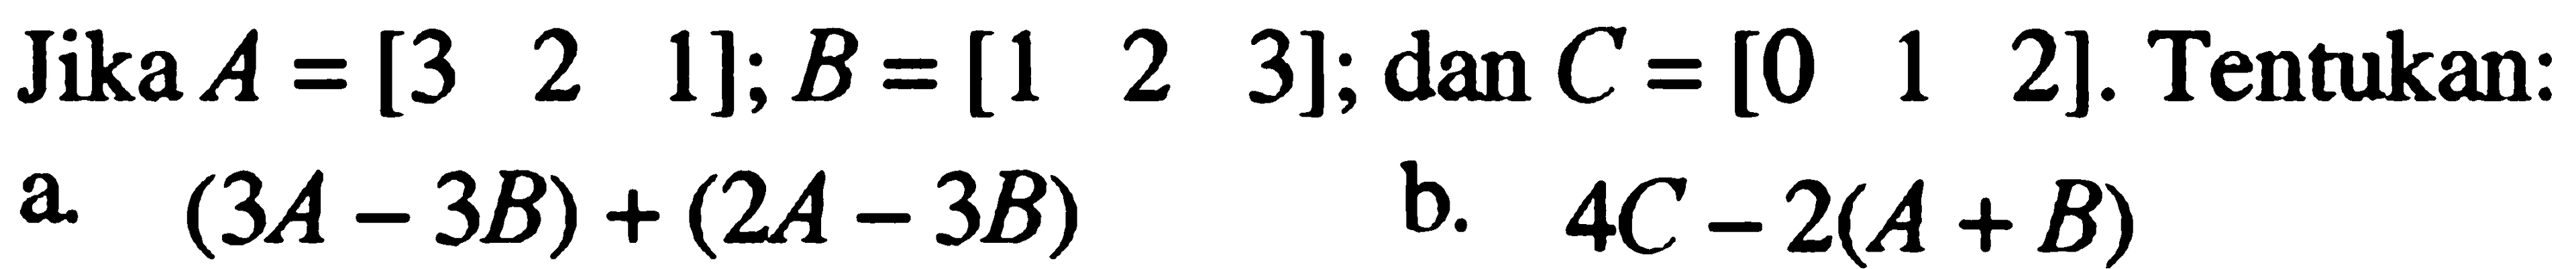 Jika A=[3 2 1]; B=[1 2 3]; dan C=[0 1 2]. Tentukan: a. (3A-3B)+(2A-3B) b. 4C-2(A+B)